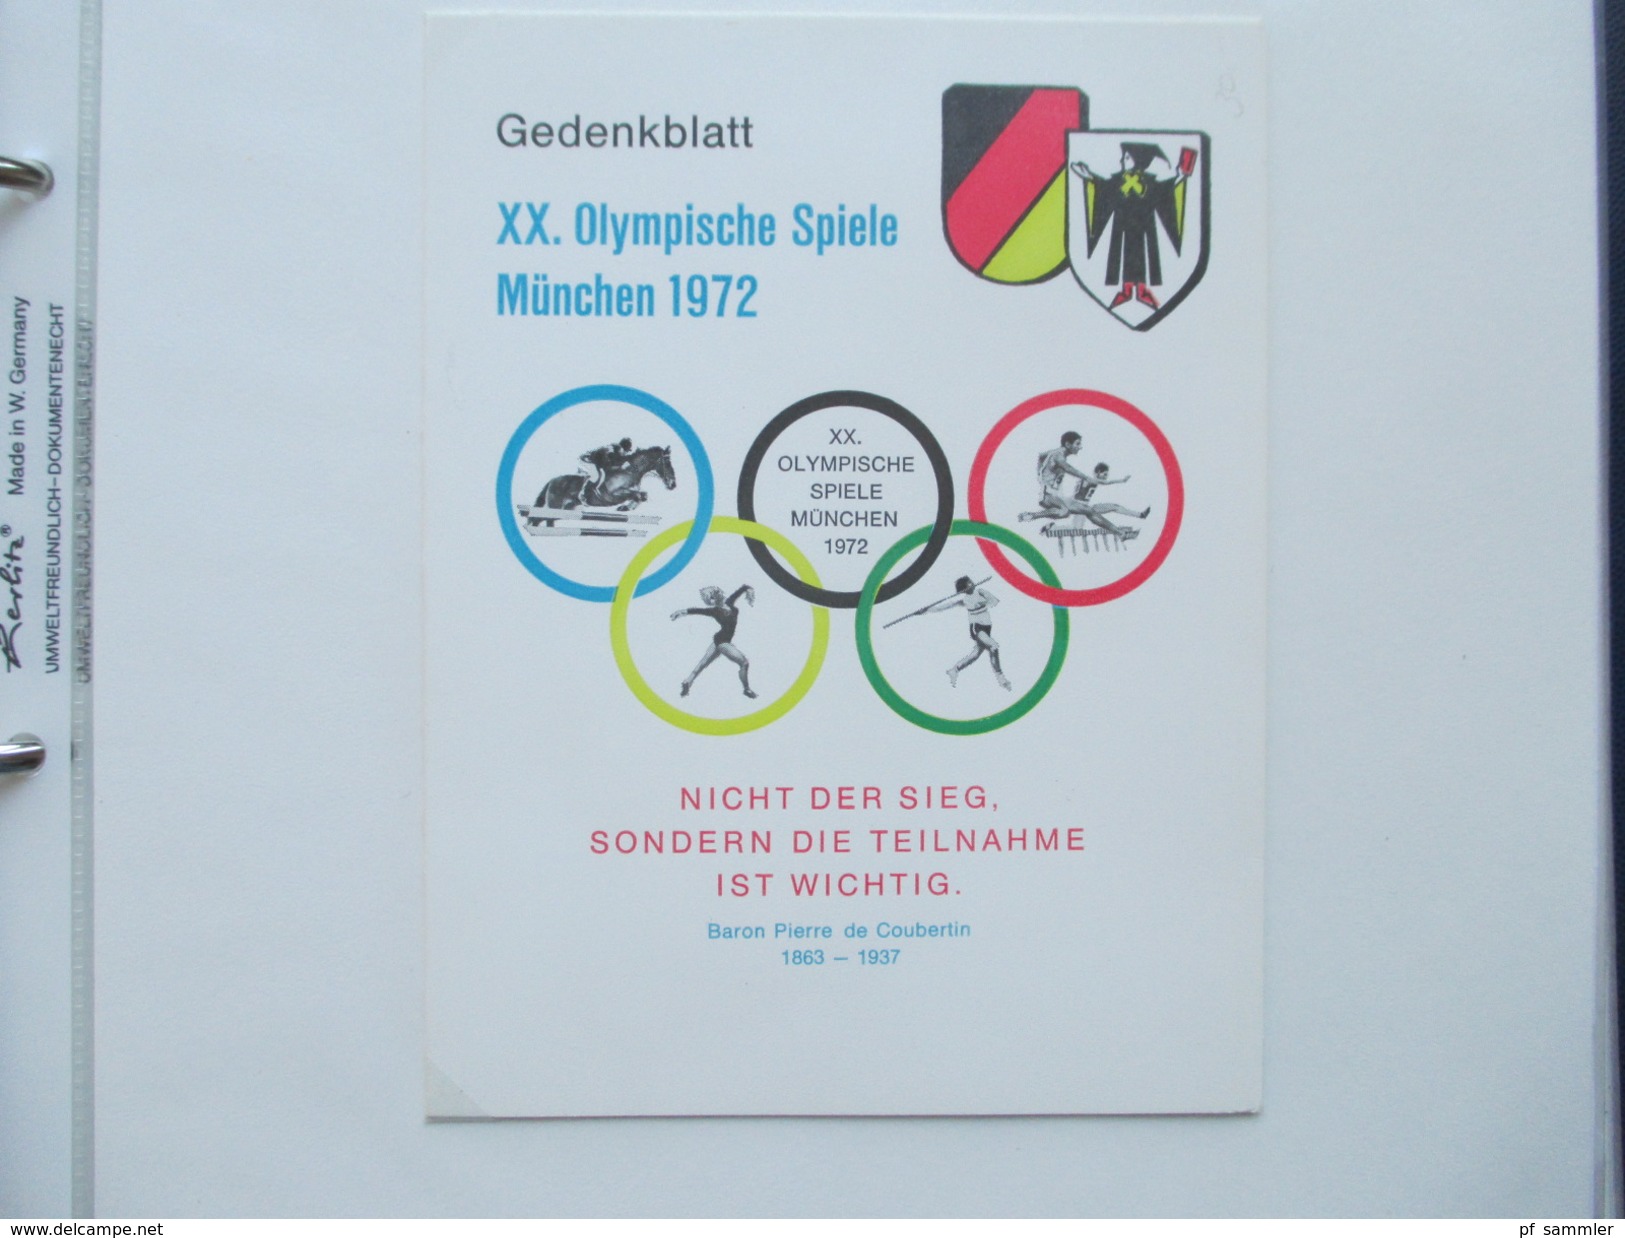 Olympische Spiele München 1972 Sammlung Sonderbelege / Karten mit Blocks und besseren Stücken!! Hoher Katalogwert!!